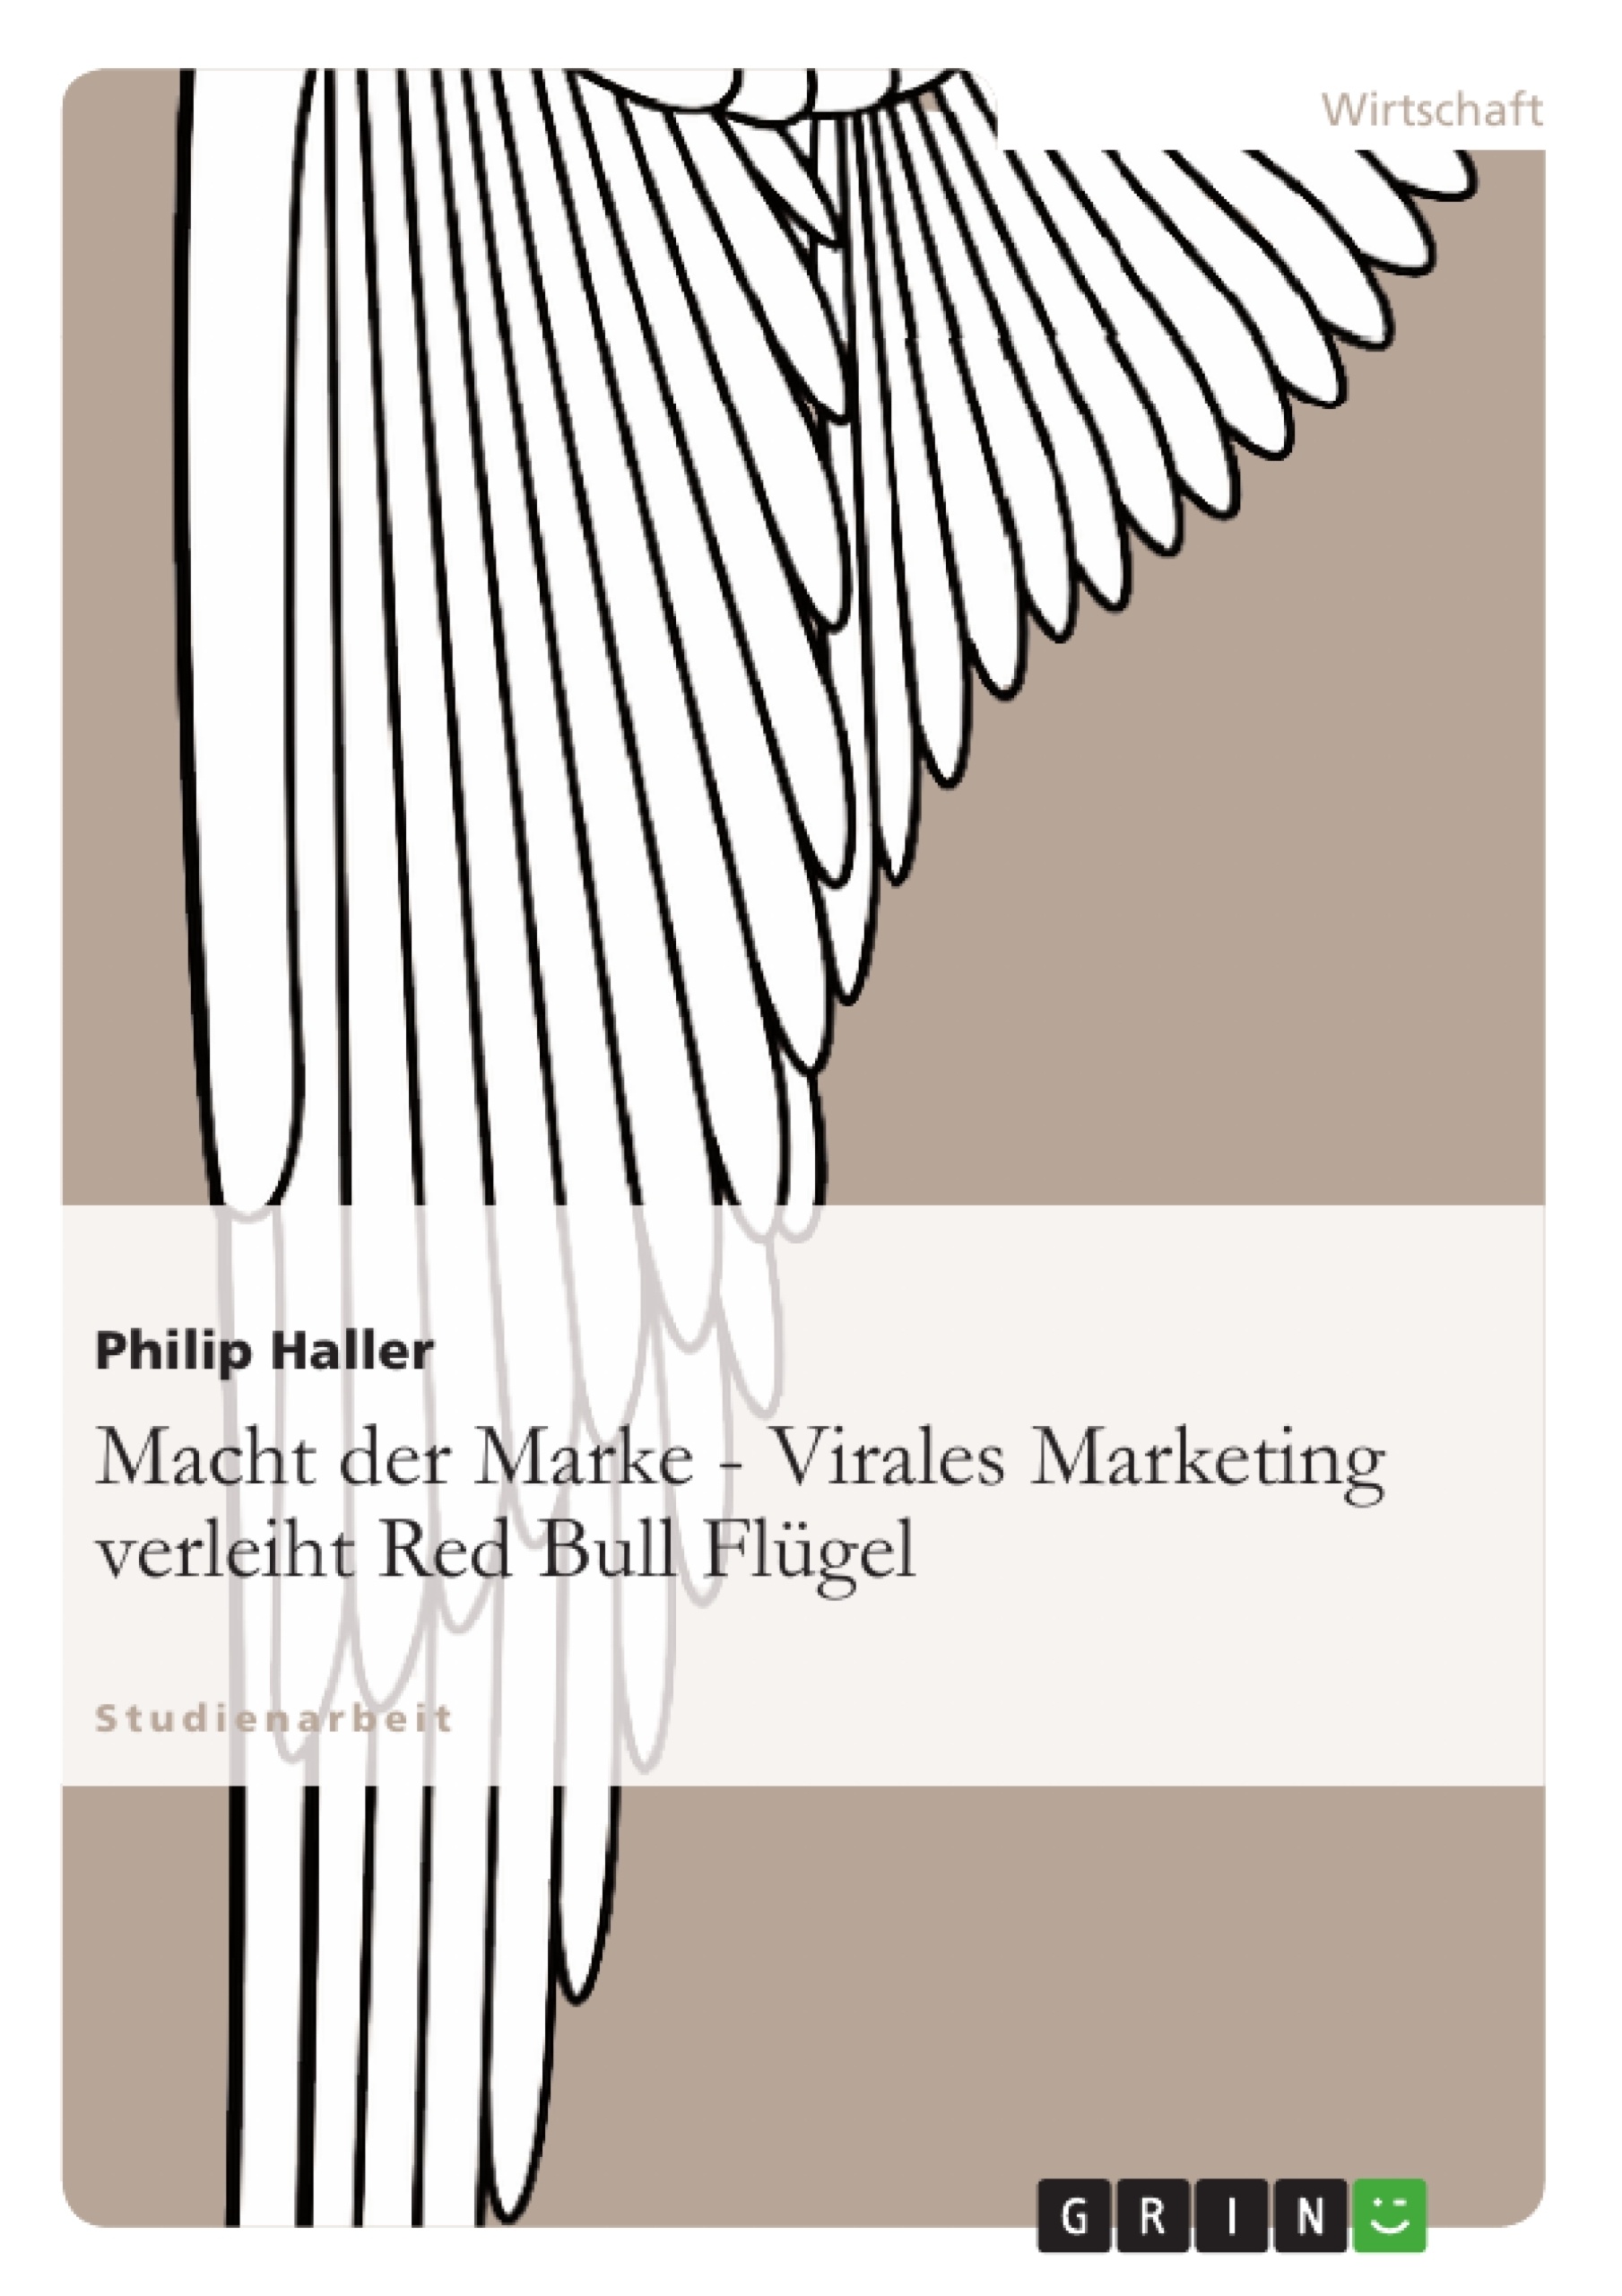 Titel: Macht der Marke - Virales Marketing verleiht Red Bull Flügel